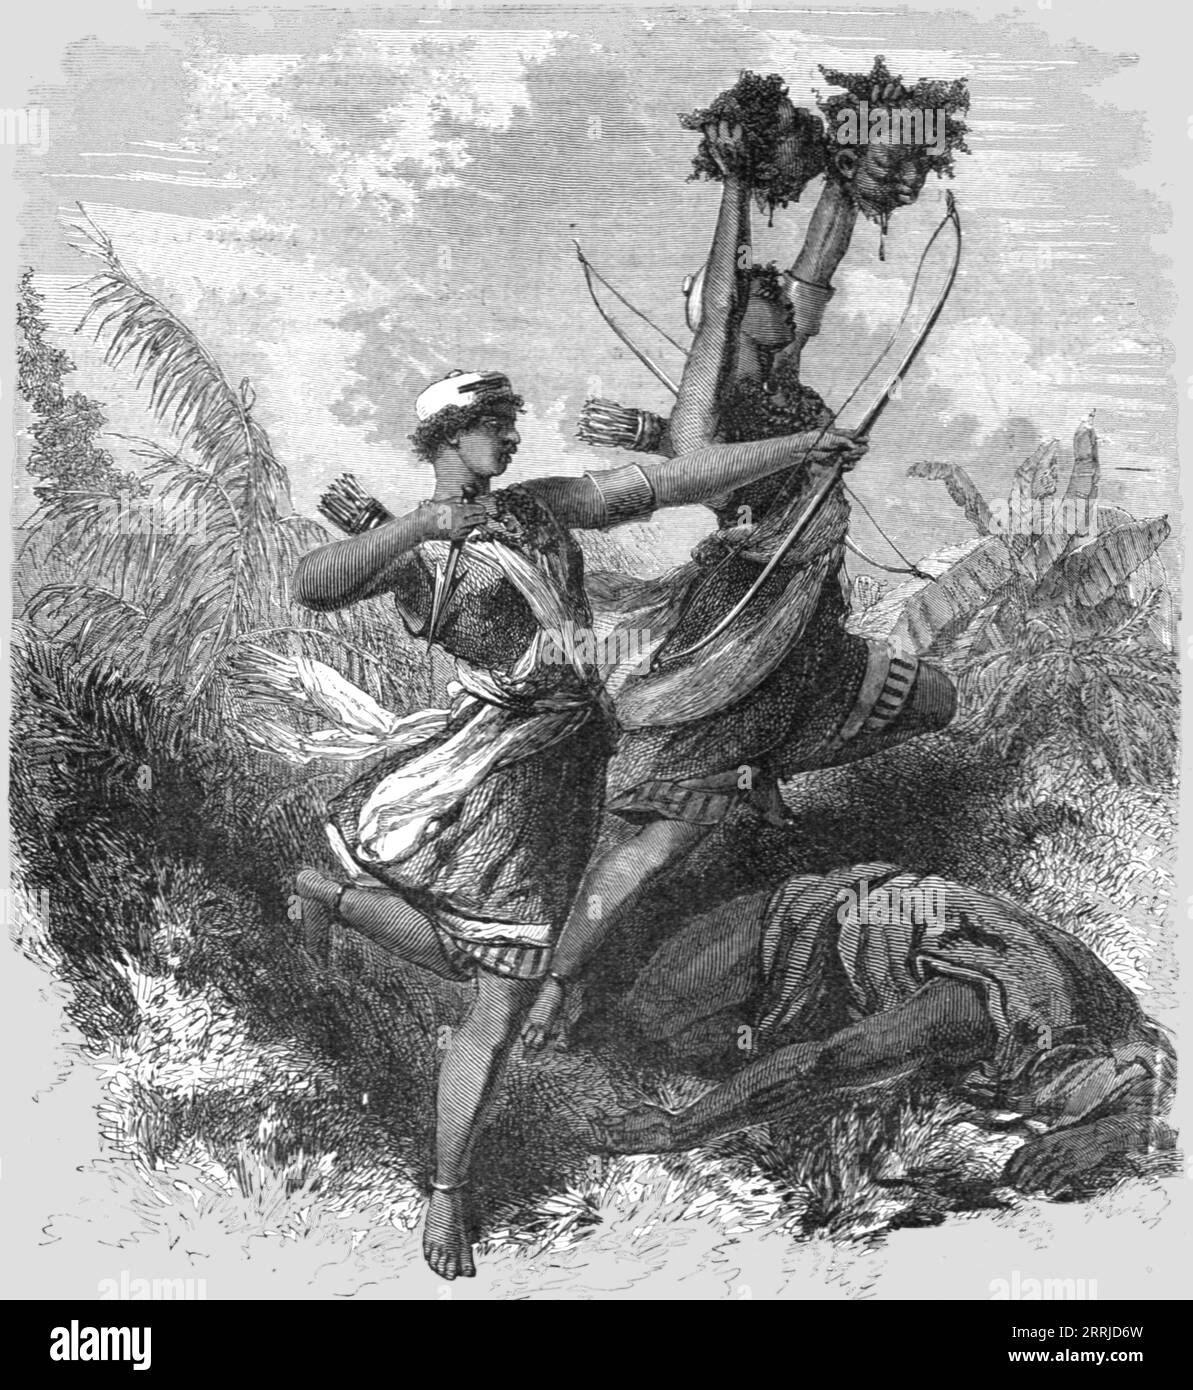 « Amazones du Dahomey dans la bataille ; le Royaume du Dahomey », 1875. Extrait de 'Voyages illustrés' de H.W. Bates. [Cassell, Petter et Galpin, c1880, Londres] et Galpin. Banque D'Images